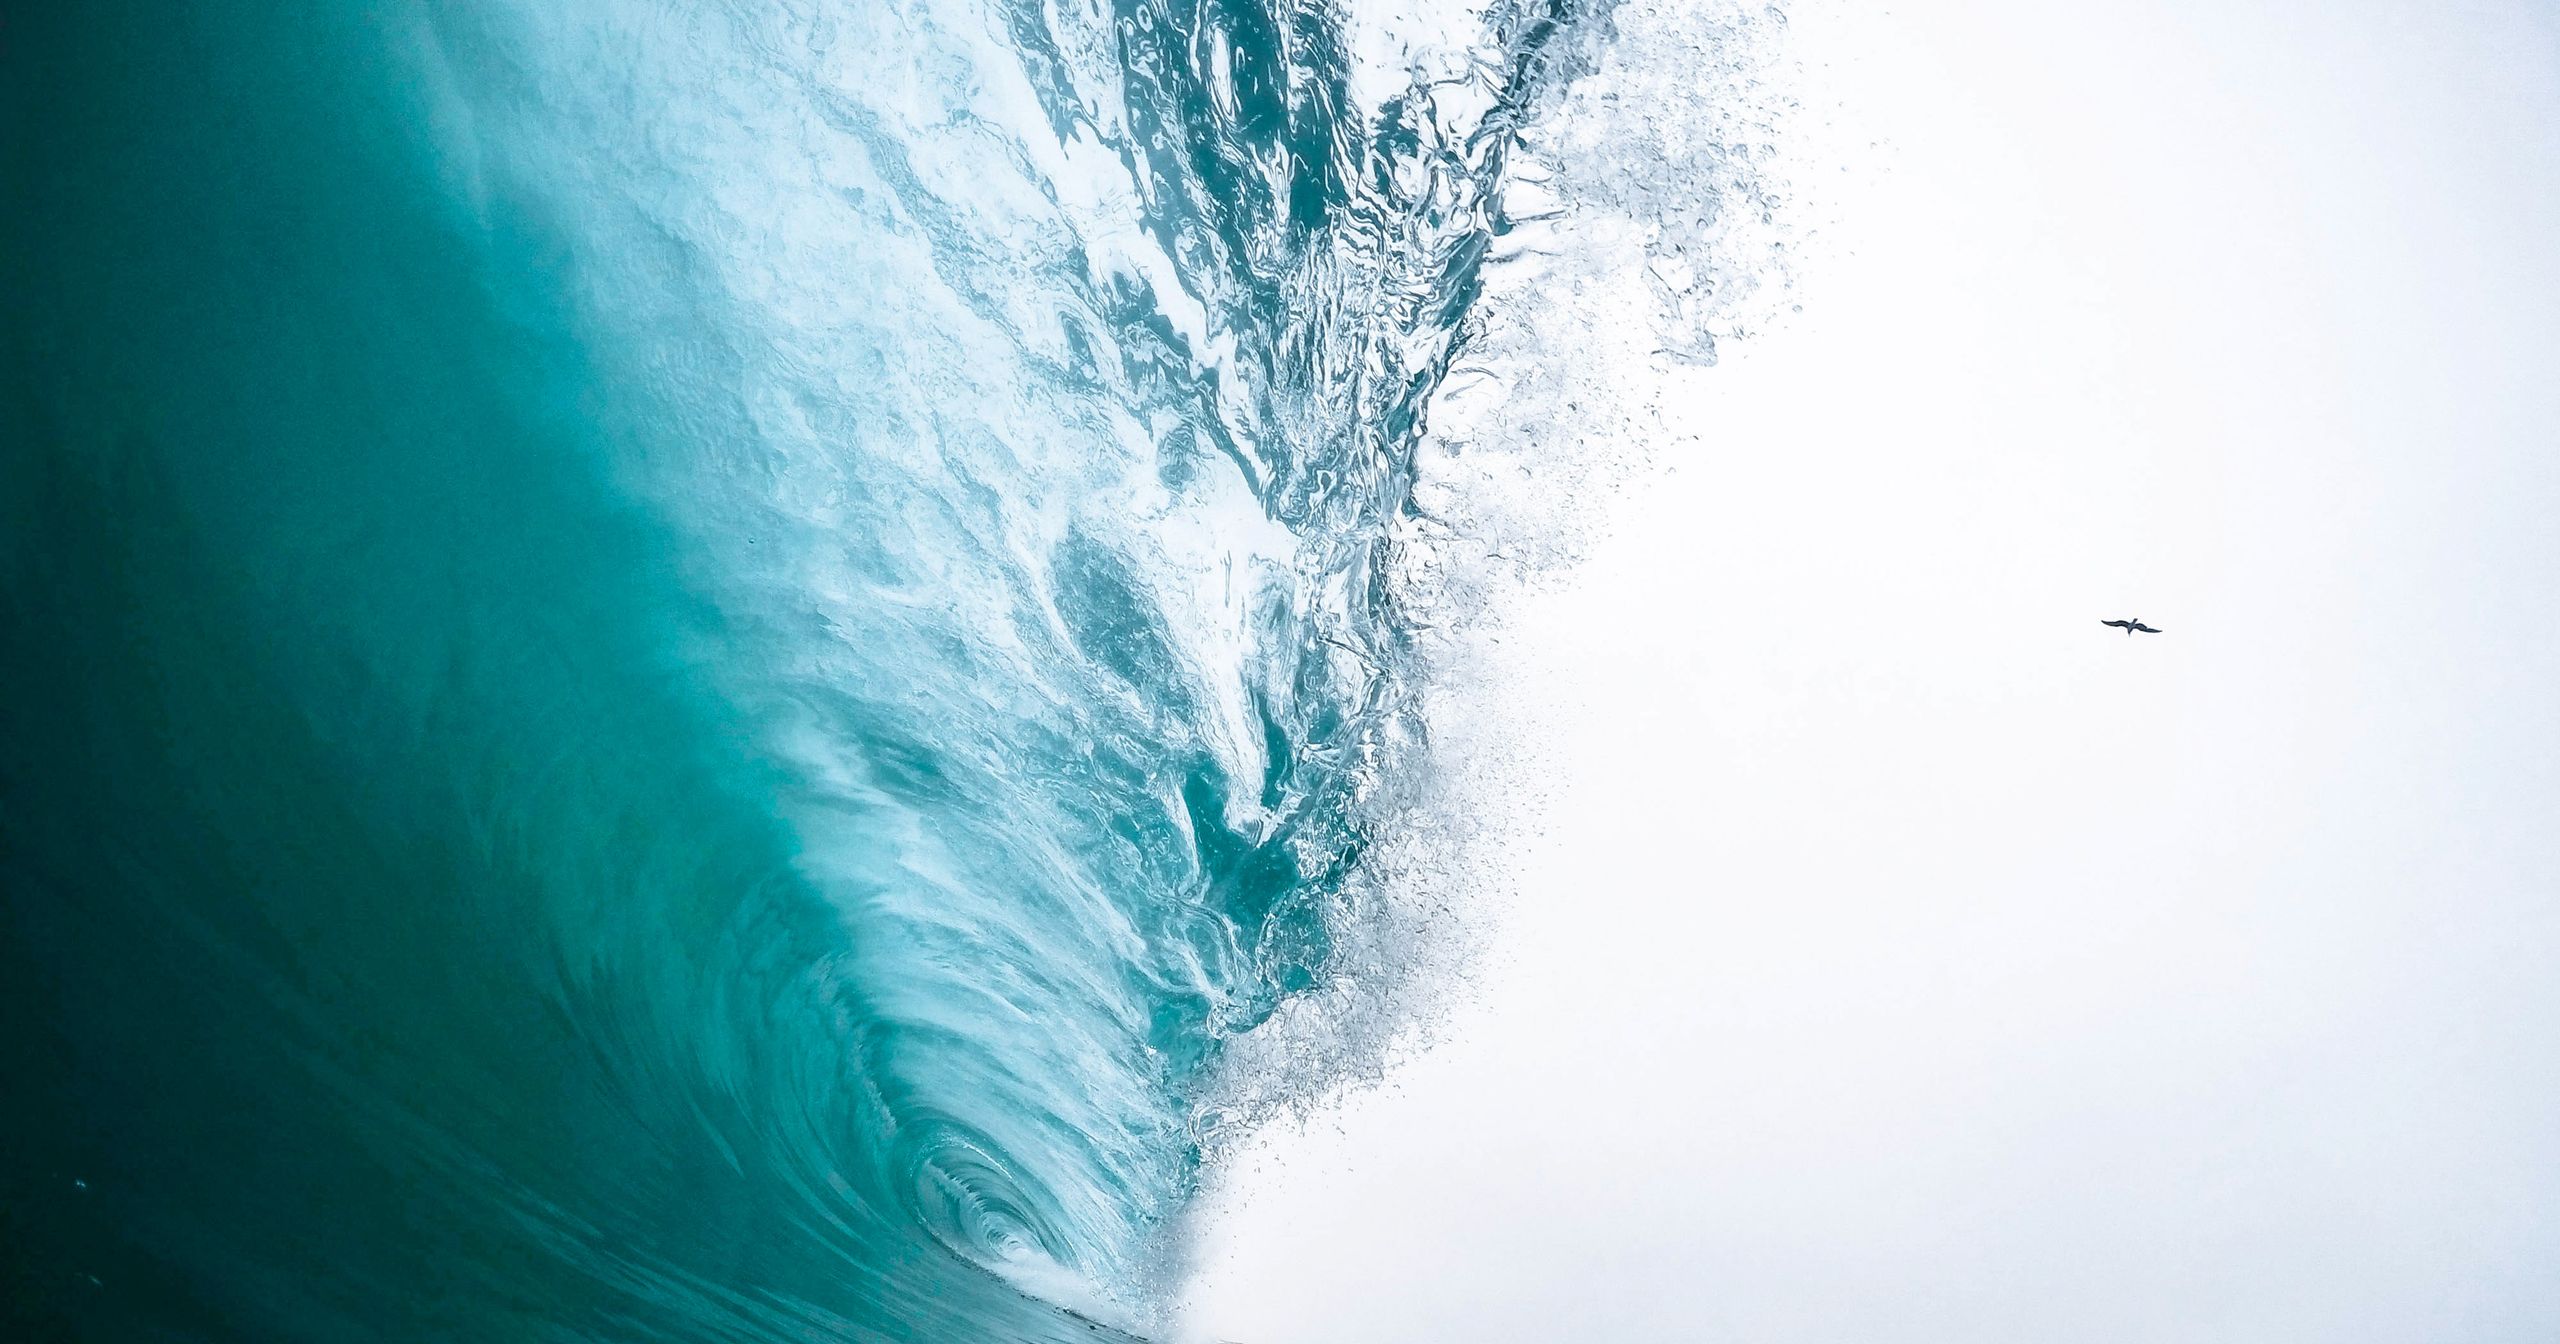 Opening image background: waves sliding